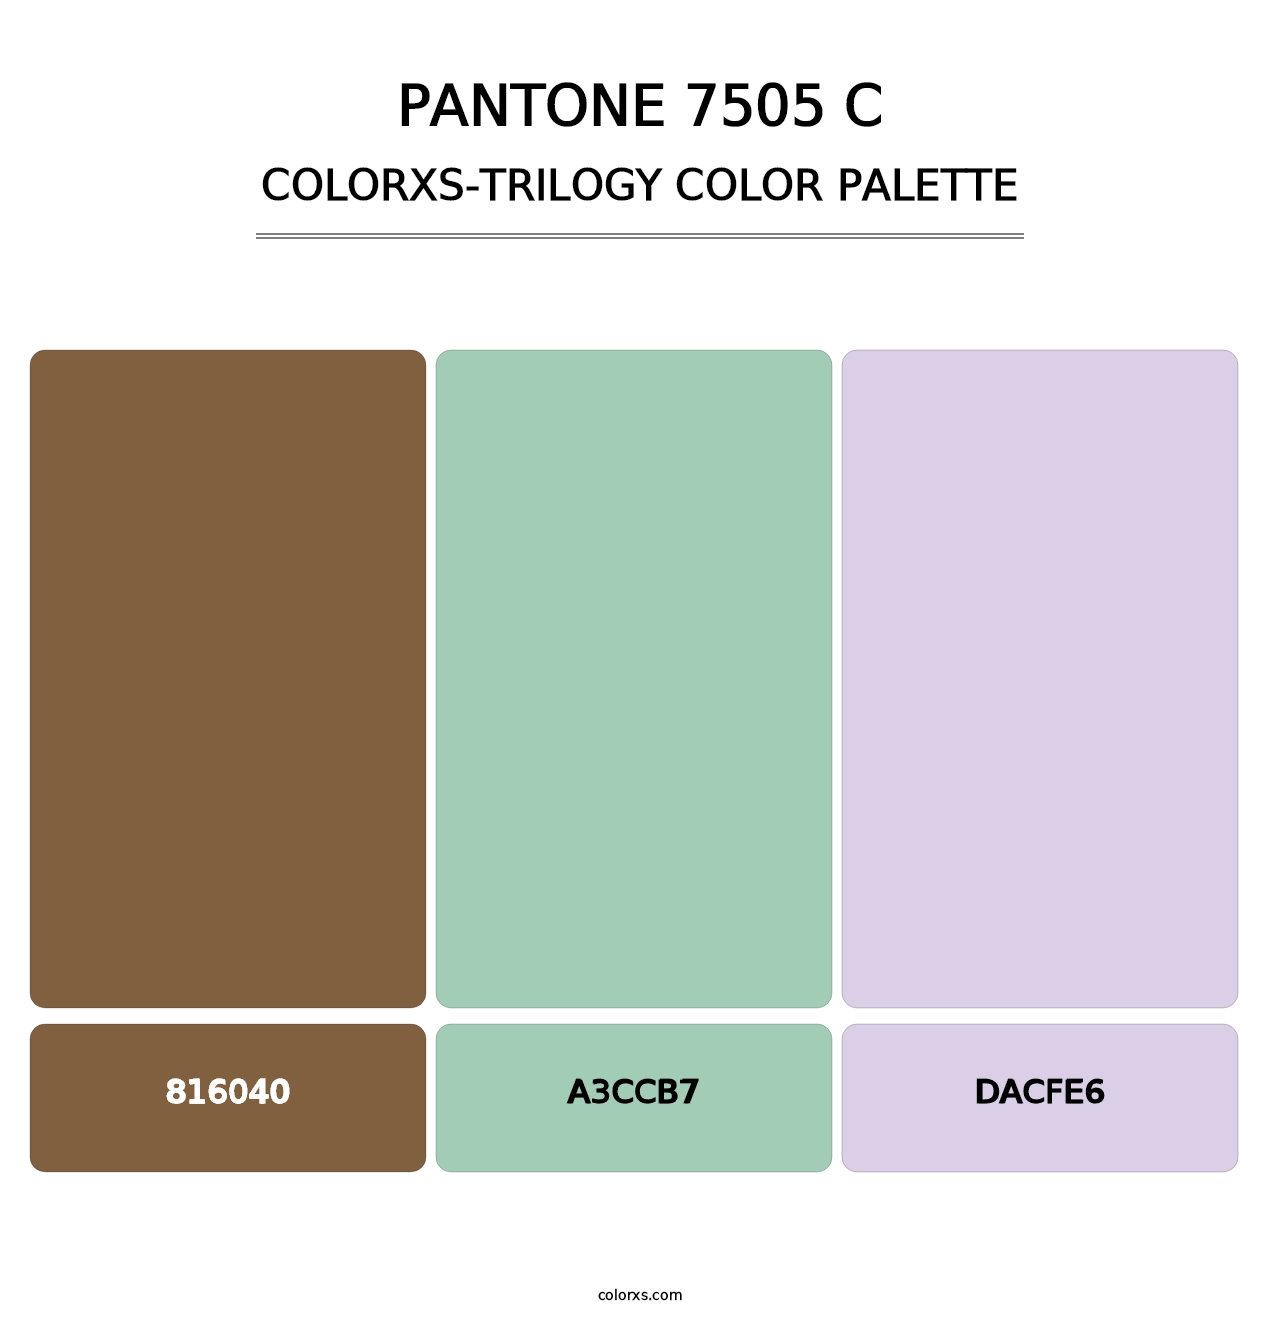 PANTONE 7505 C - Colorxs Trilogy Palette